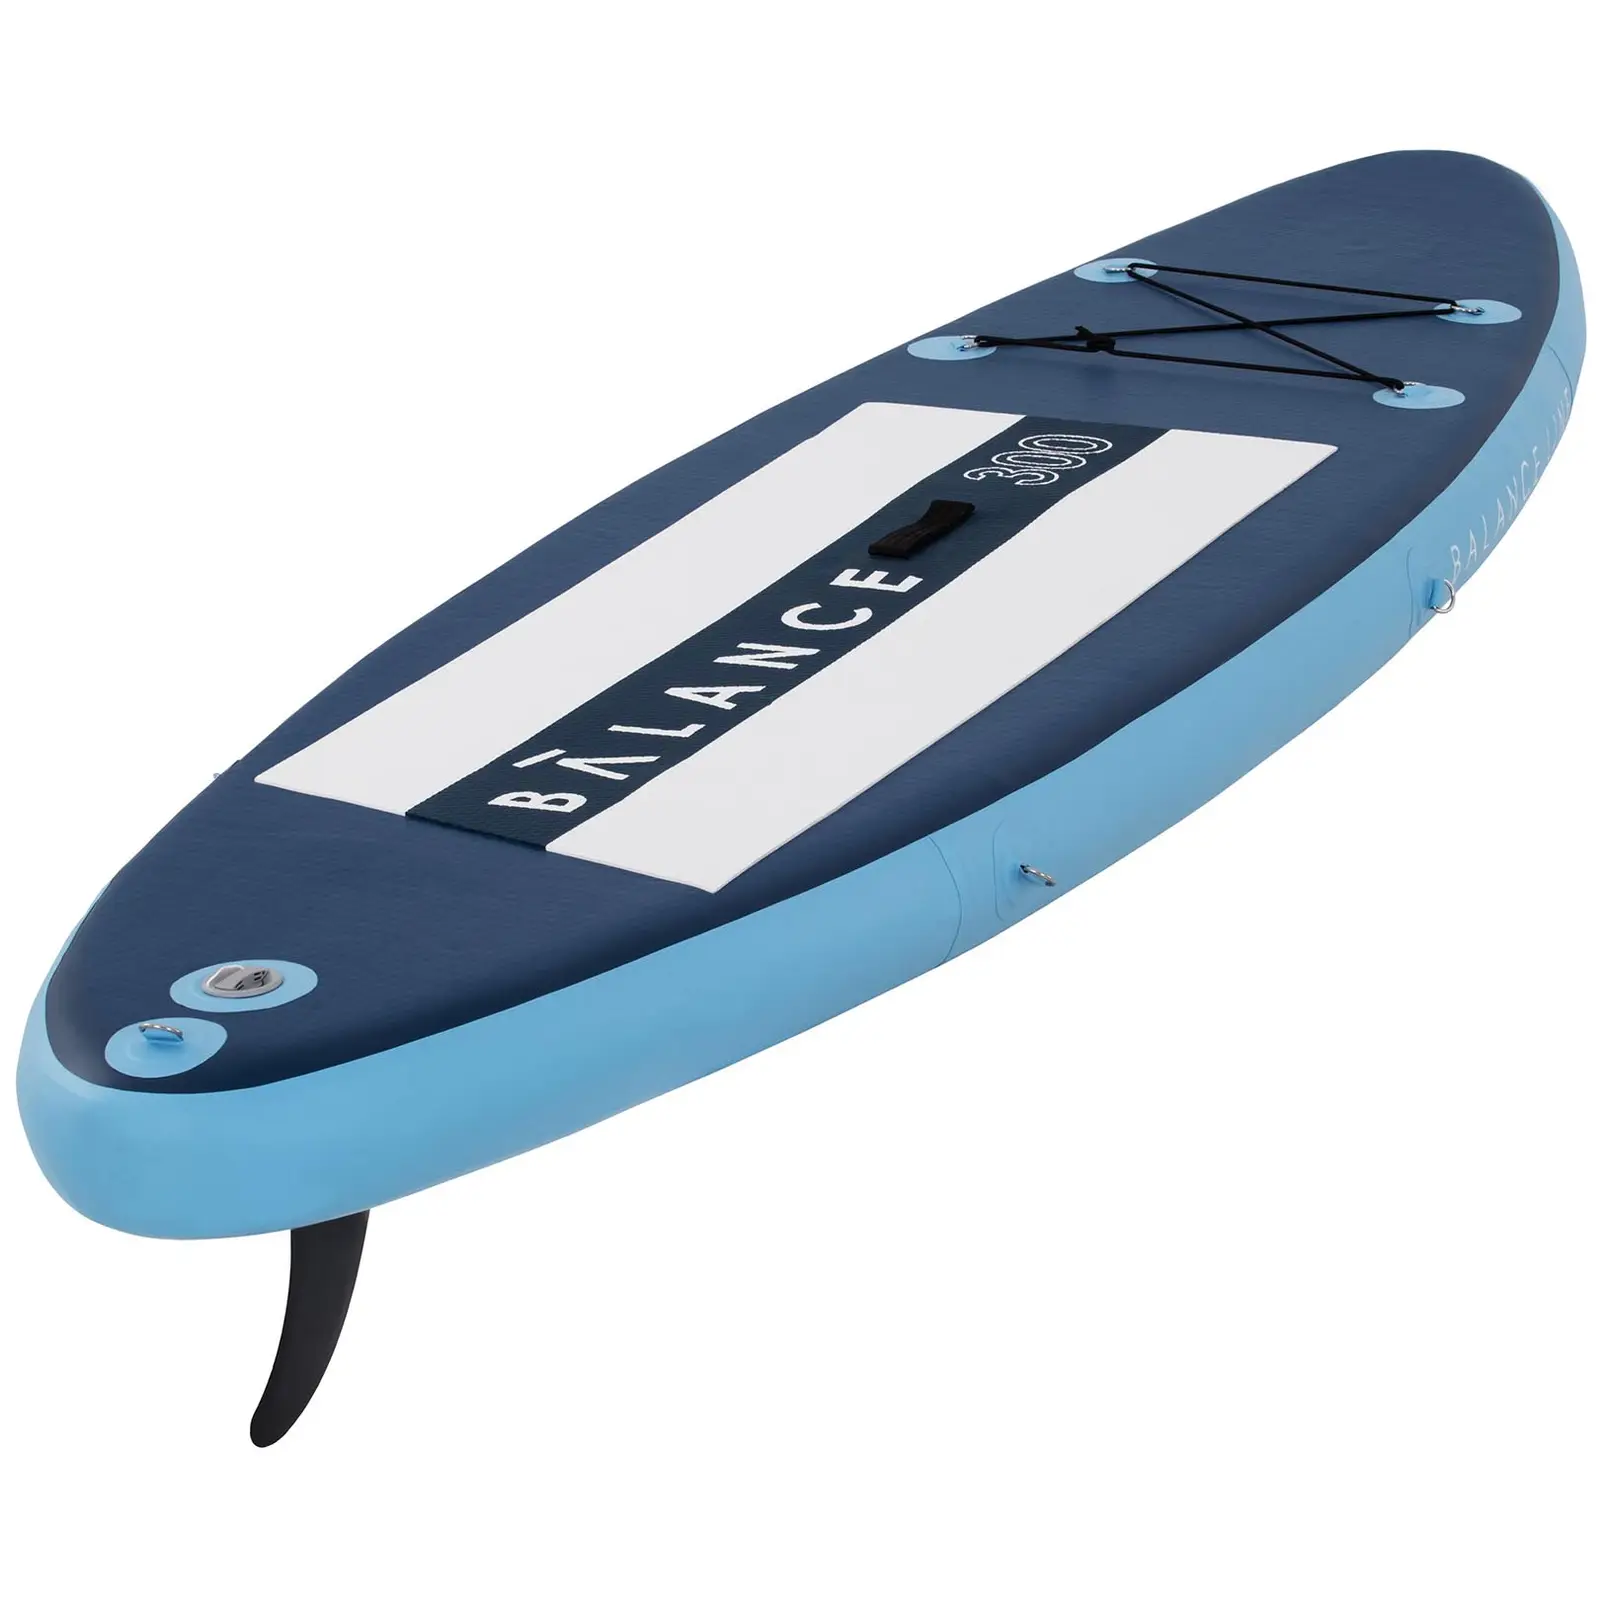 Paddle-board - 135 kg - blå/marineblå - sæt inkl. paddel og tilbehør